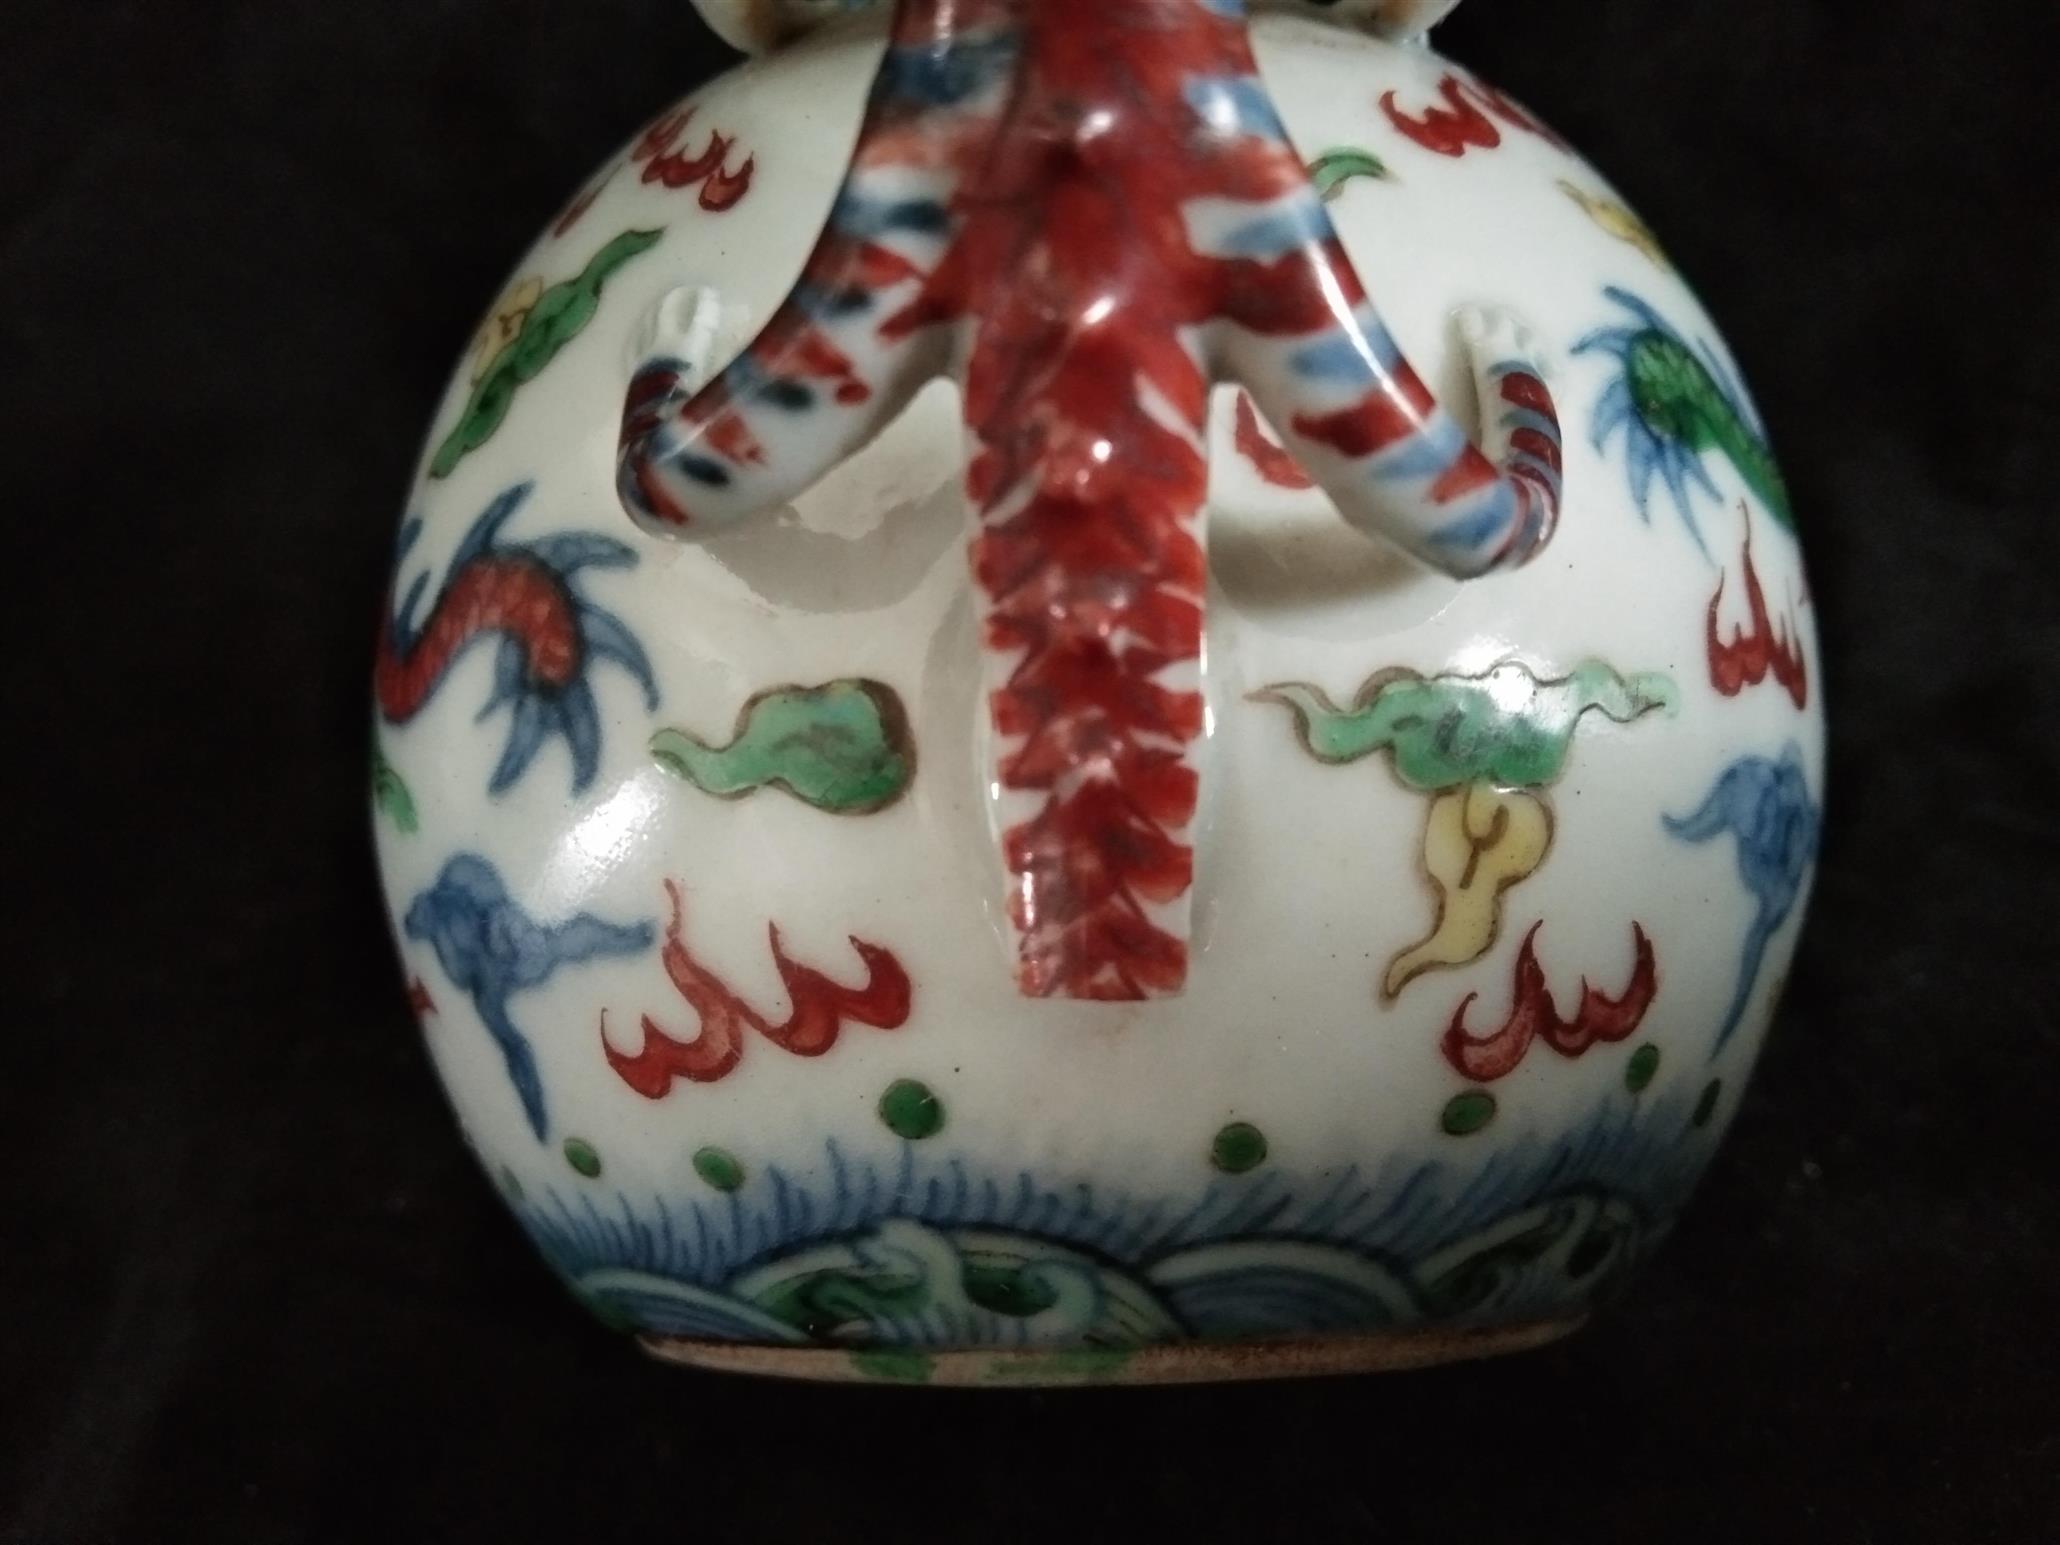 广州茶壶龙把无痕修复技术 南京美瓷工艺品有限公司